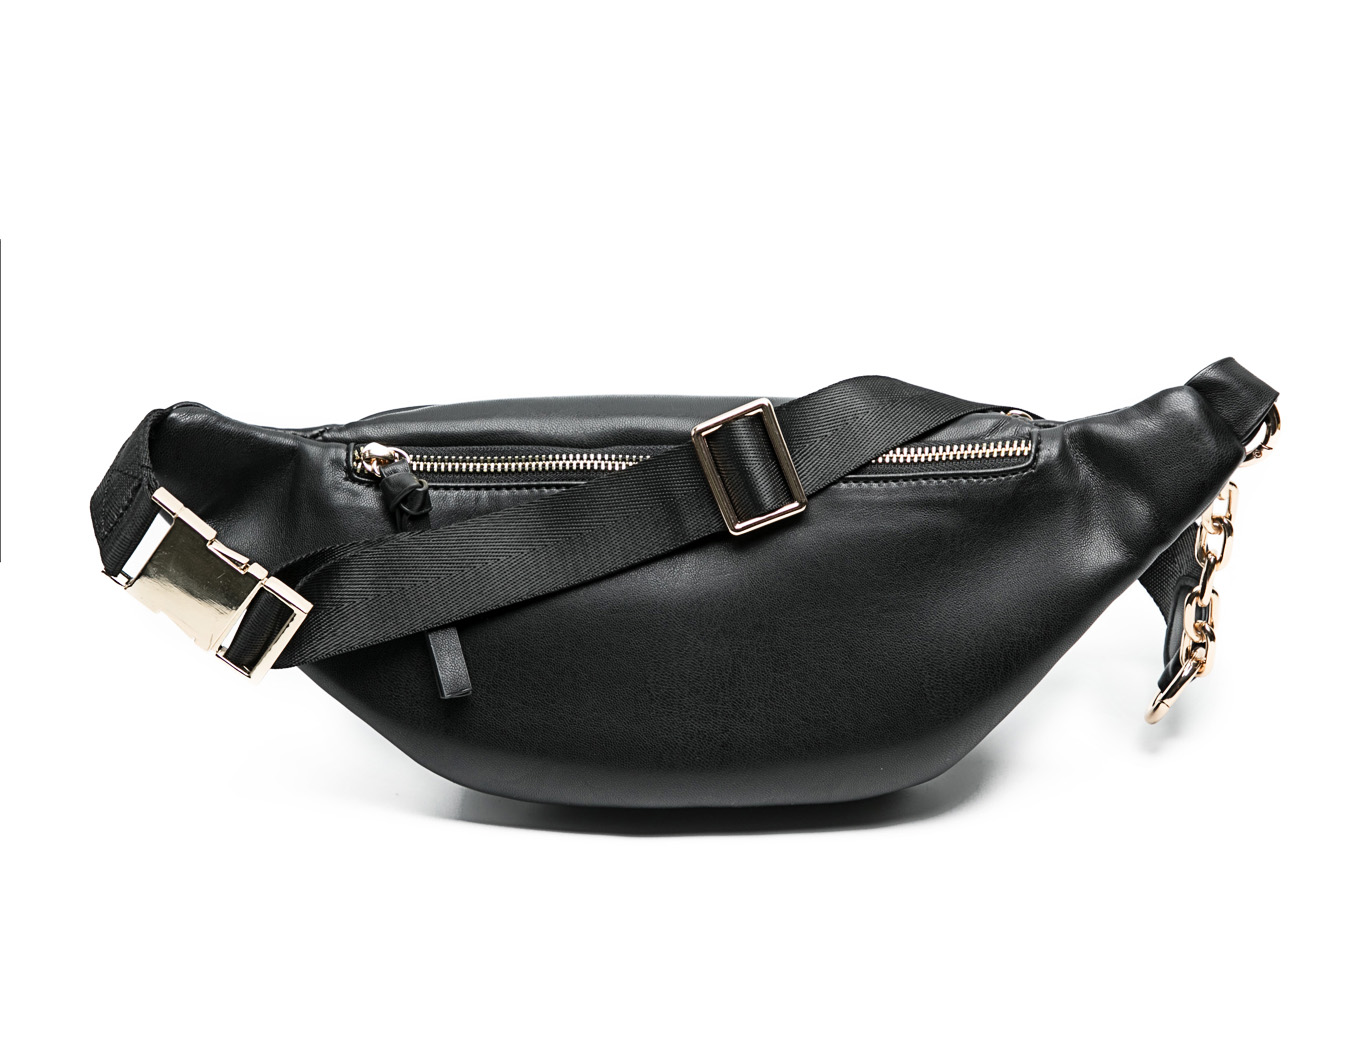 Leather Fanny Pack For Women,Waist Bag,Belt Bag, Bum bag with 9 Pockets ( Black)